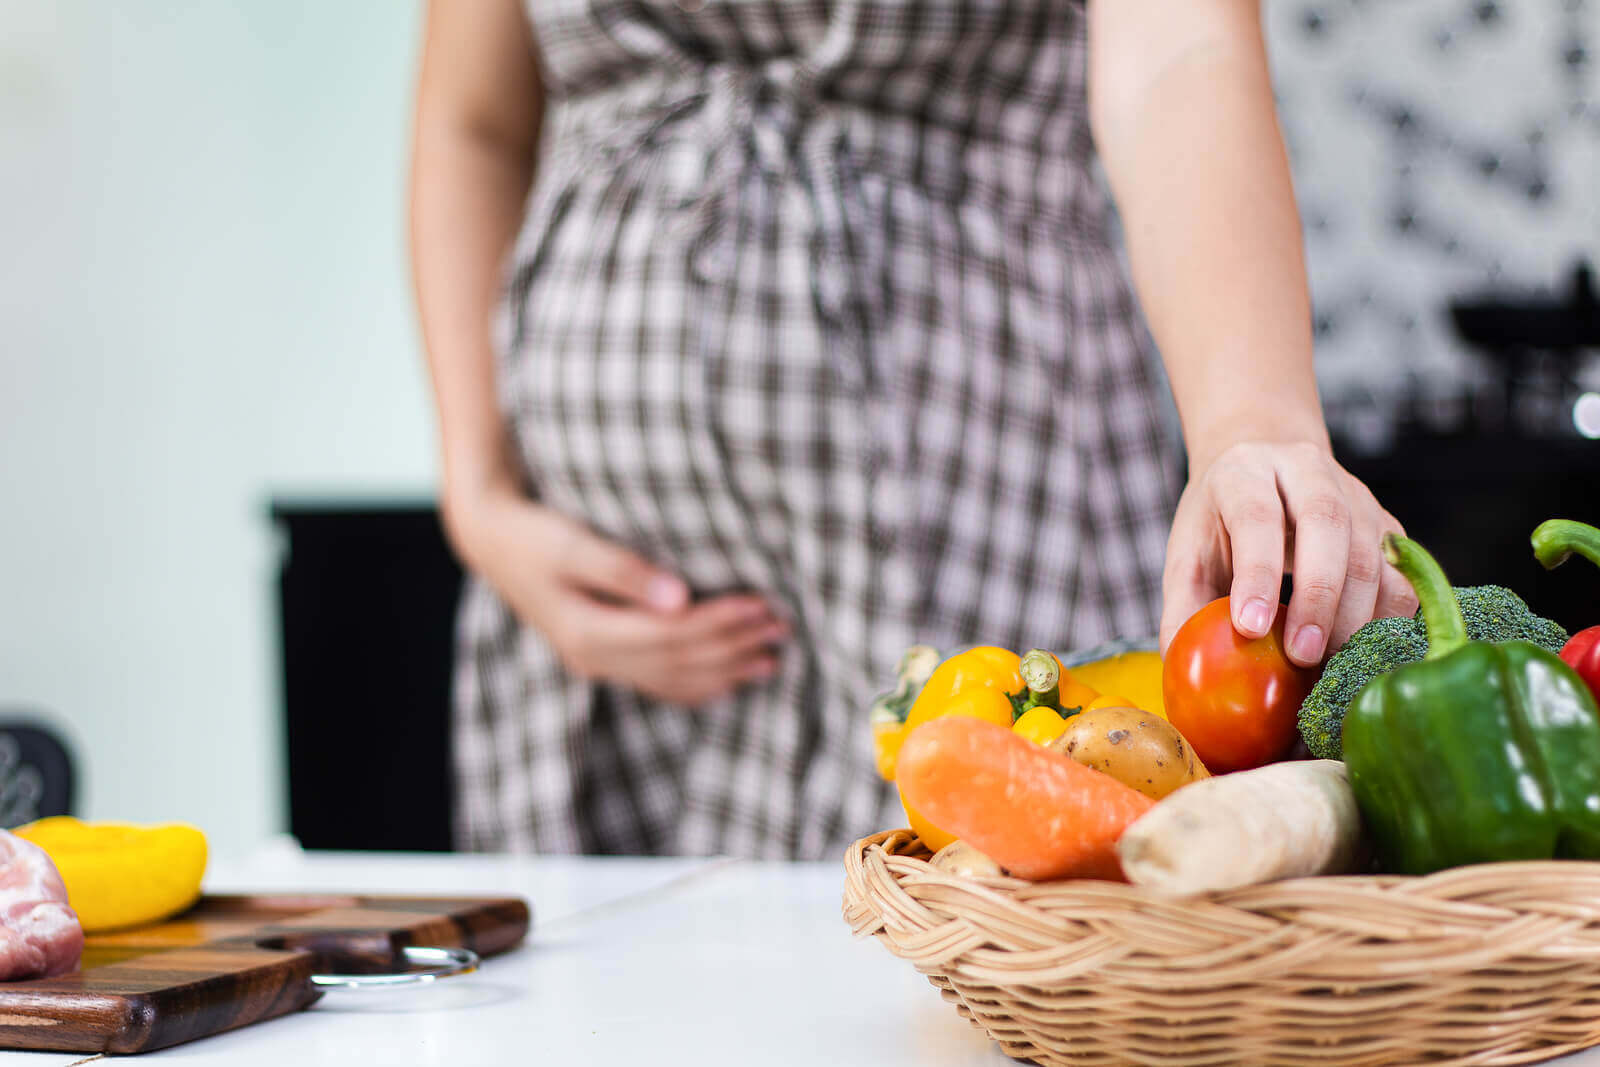 En gravid kvinne tar tak i en tomat fra en kurv med grønnsaker.